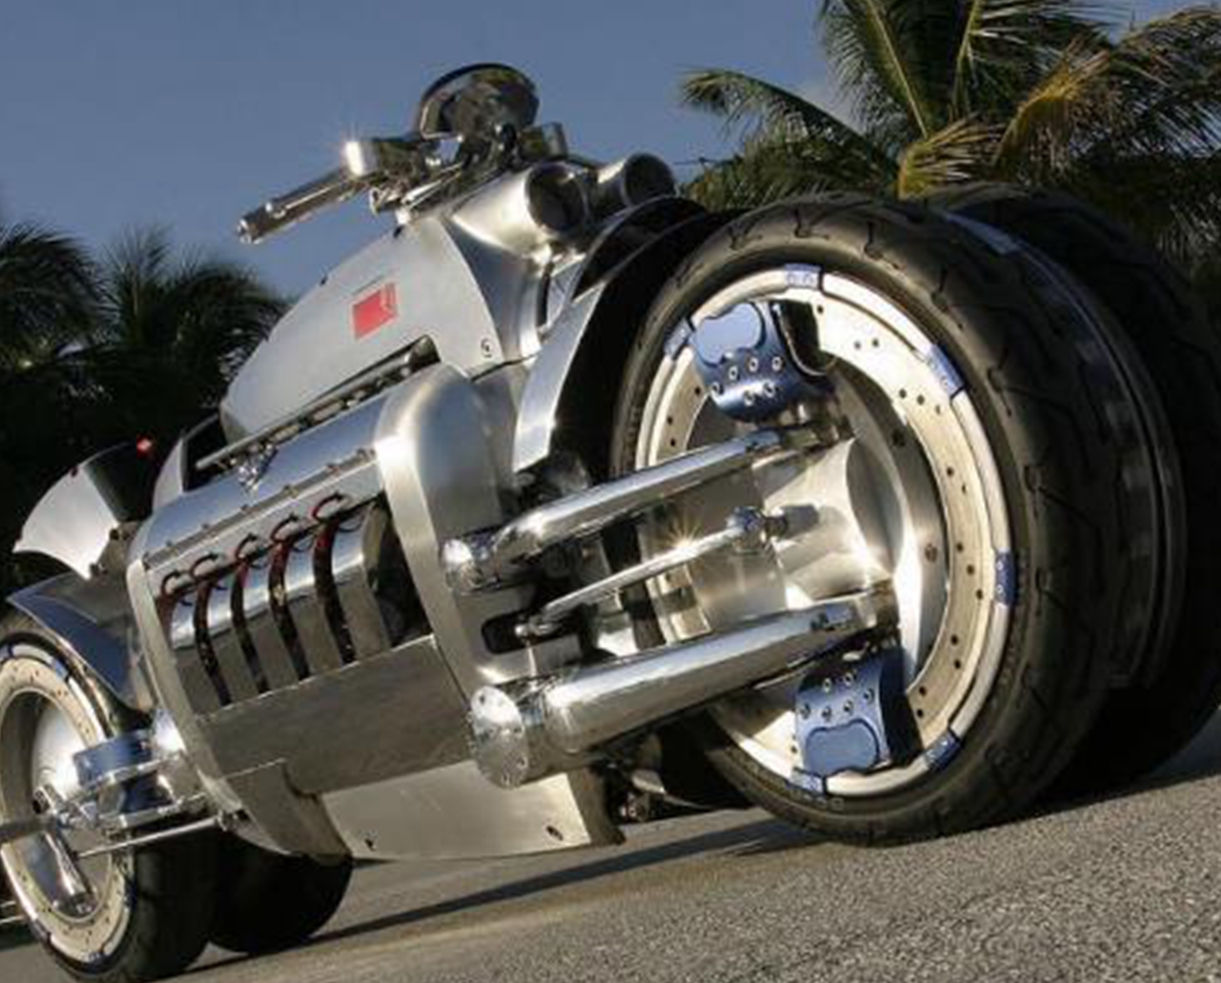 盘点世界上最贵的十辆摩托车,第一名长得最丑,却要36万美元?